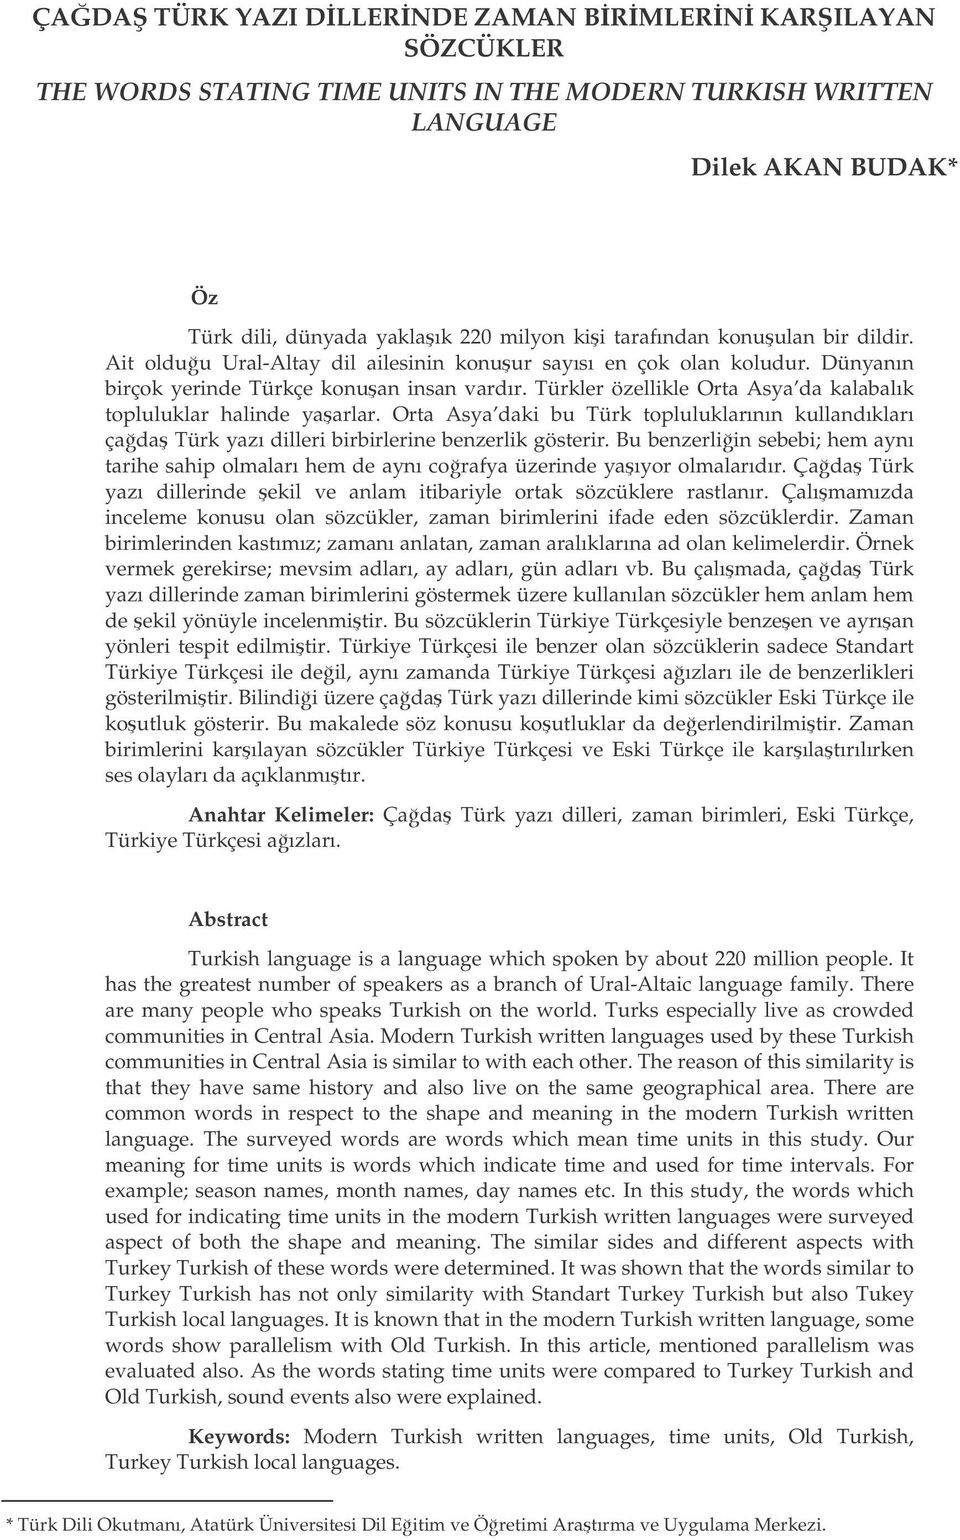 Türkler özellikle Orta Asya da kalabalık topluluklar halinde yaarlar. Orta Asya daki bu Türk topluluklarının kullandıkları çada Türk yazı dilleri birbirlerine benzerlik gösterir.